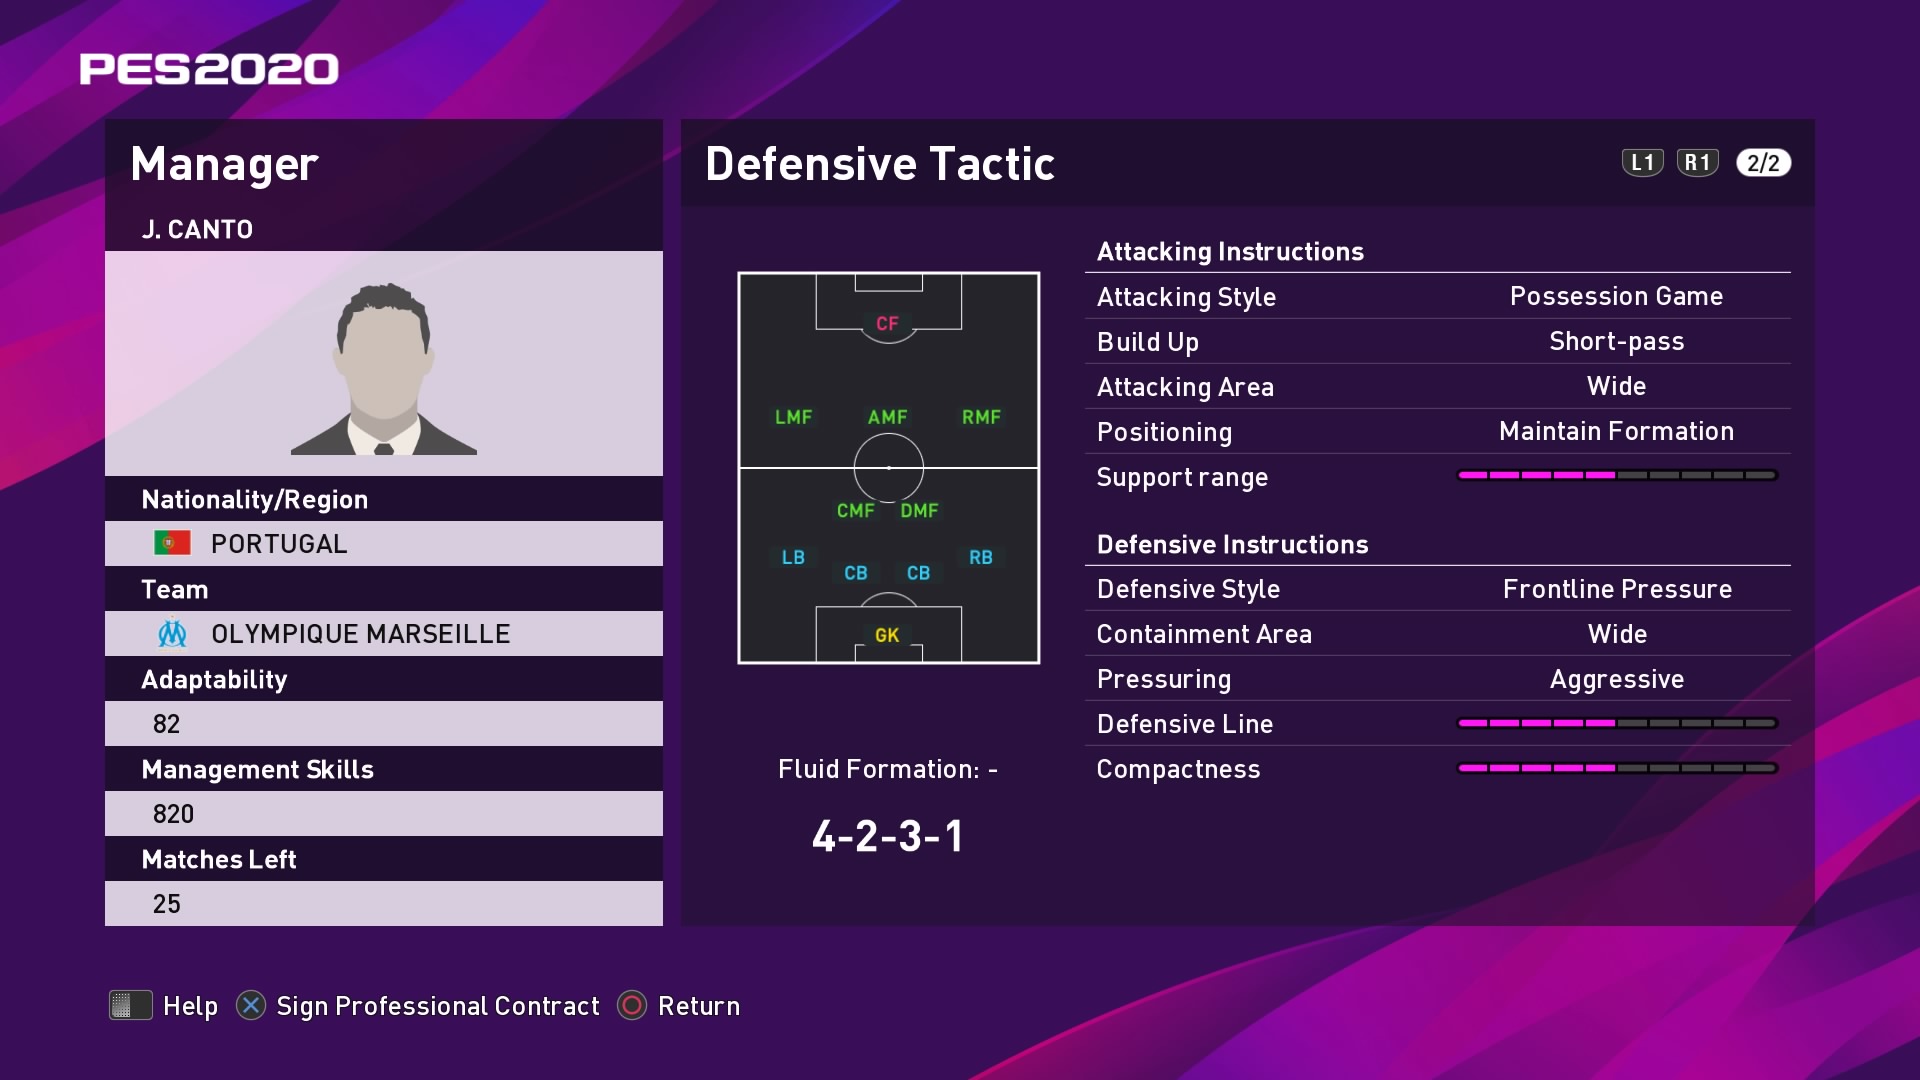 J. Canto (2) (André Villas-Boas) Defensive Tactic in PES 2020 myClub